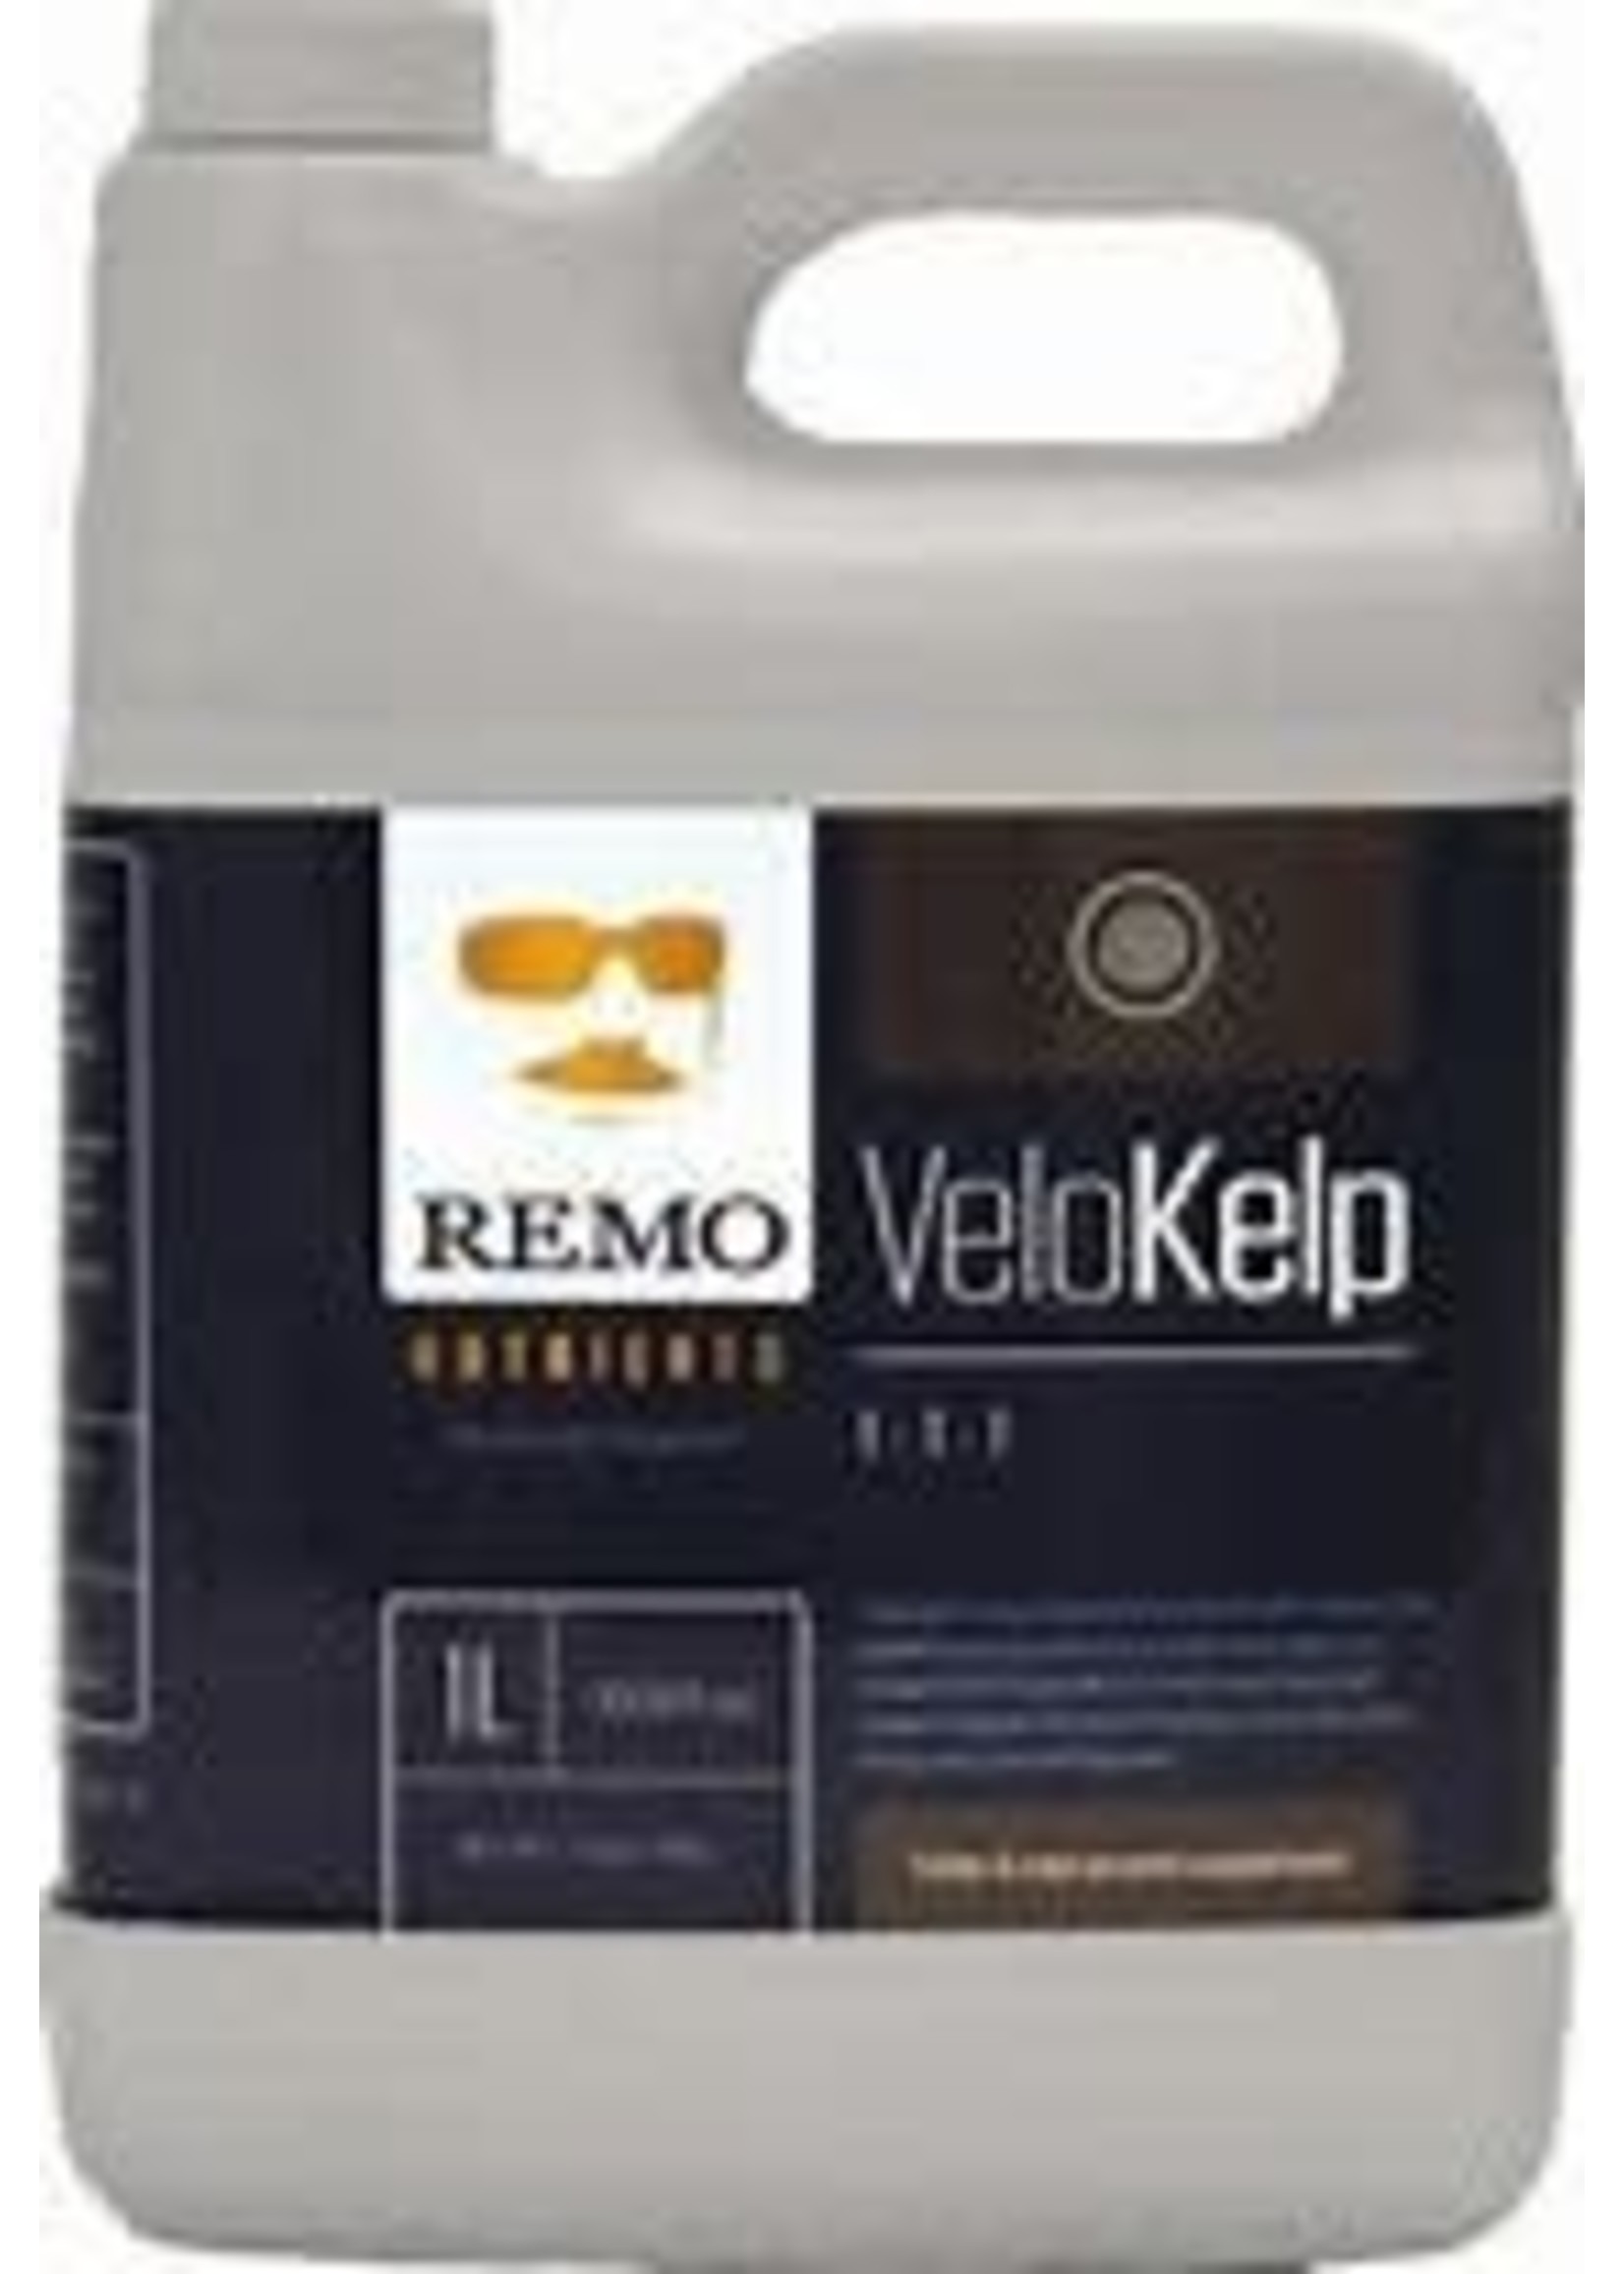 Remo Remo VeloKelp